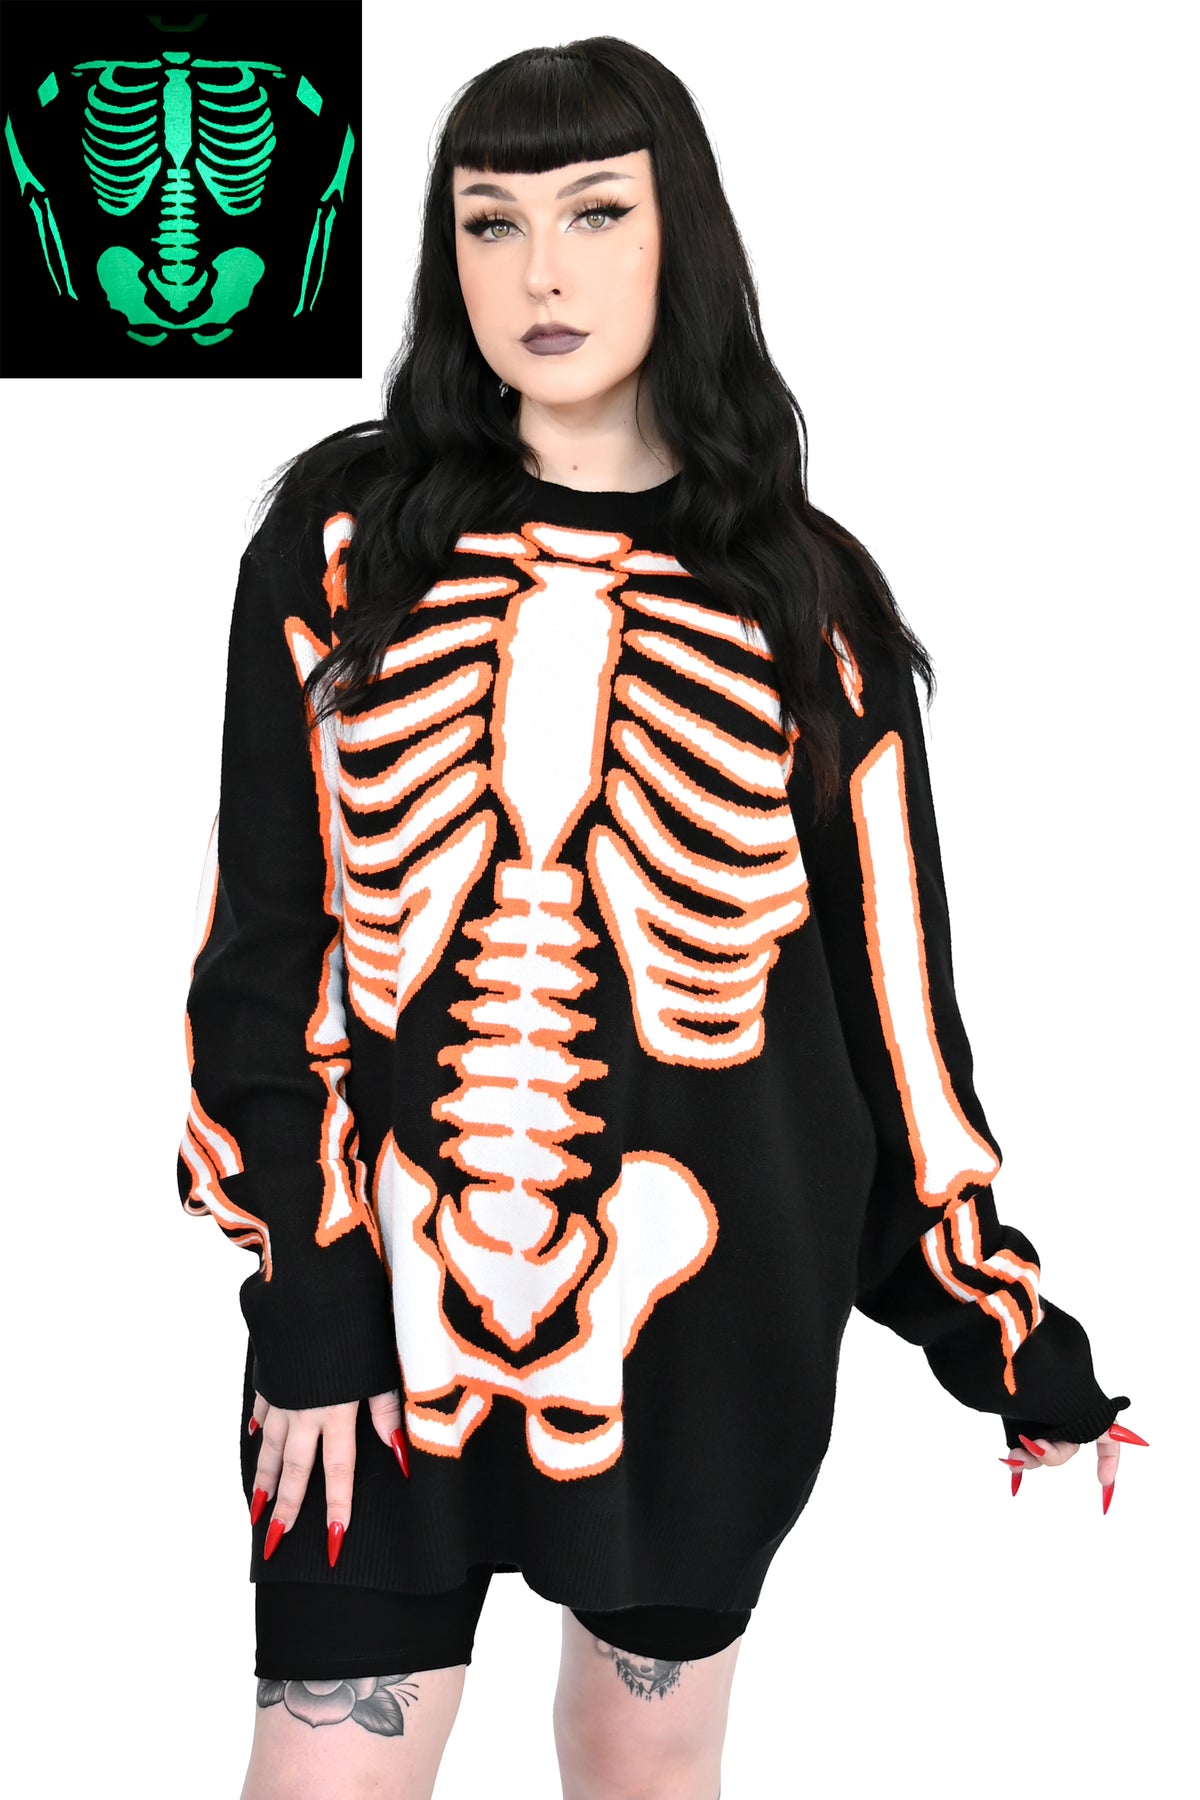 All Bones Skeleton Sweater - Glow in the Dark! No Restock! - XS/S & 3XL/4XL left!